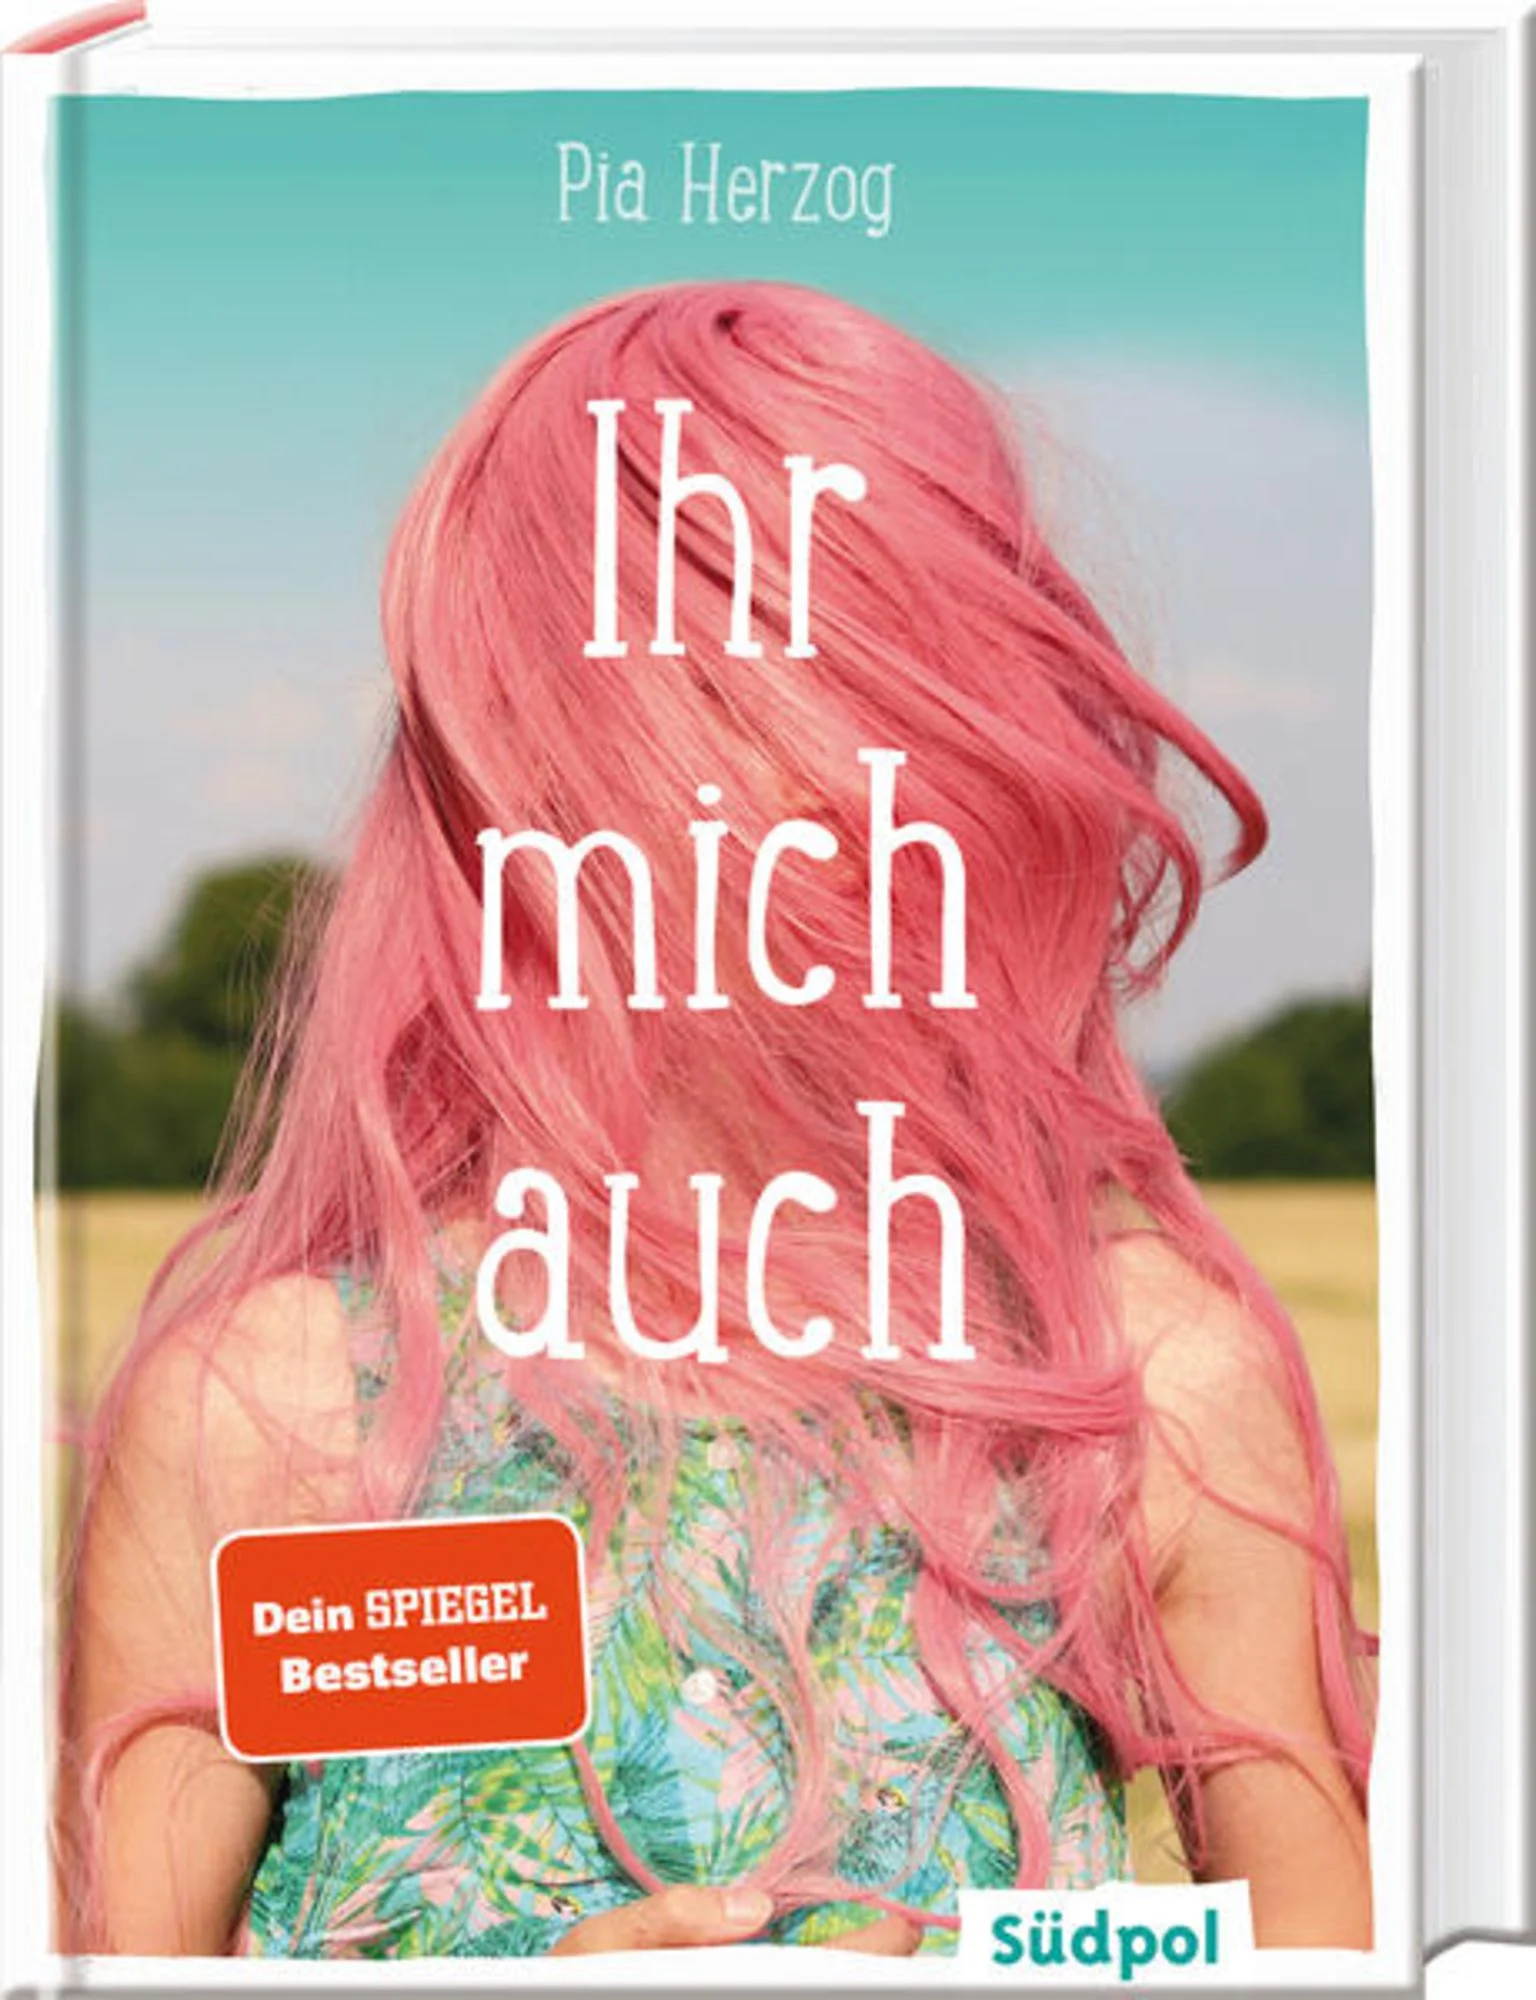 Pia Herzog: Ihr mich auch (Hardcover, 2019, Südpol Verlag GmbH)